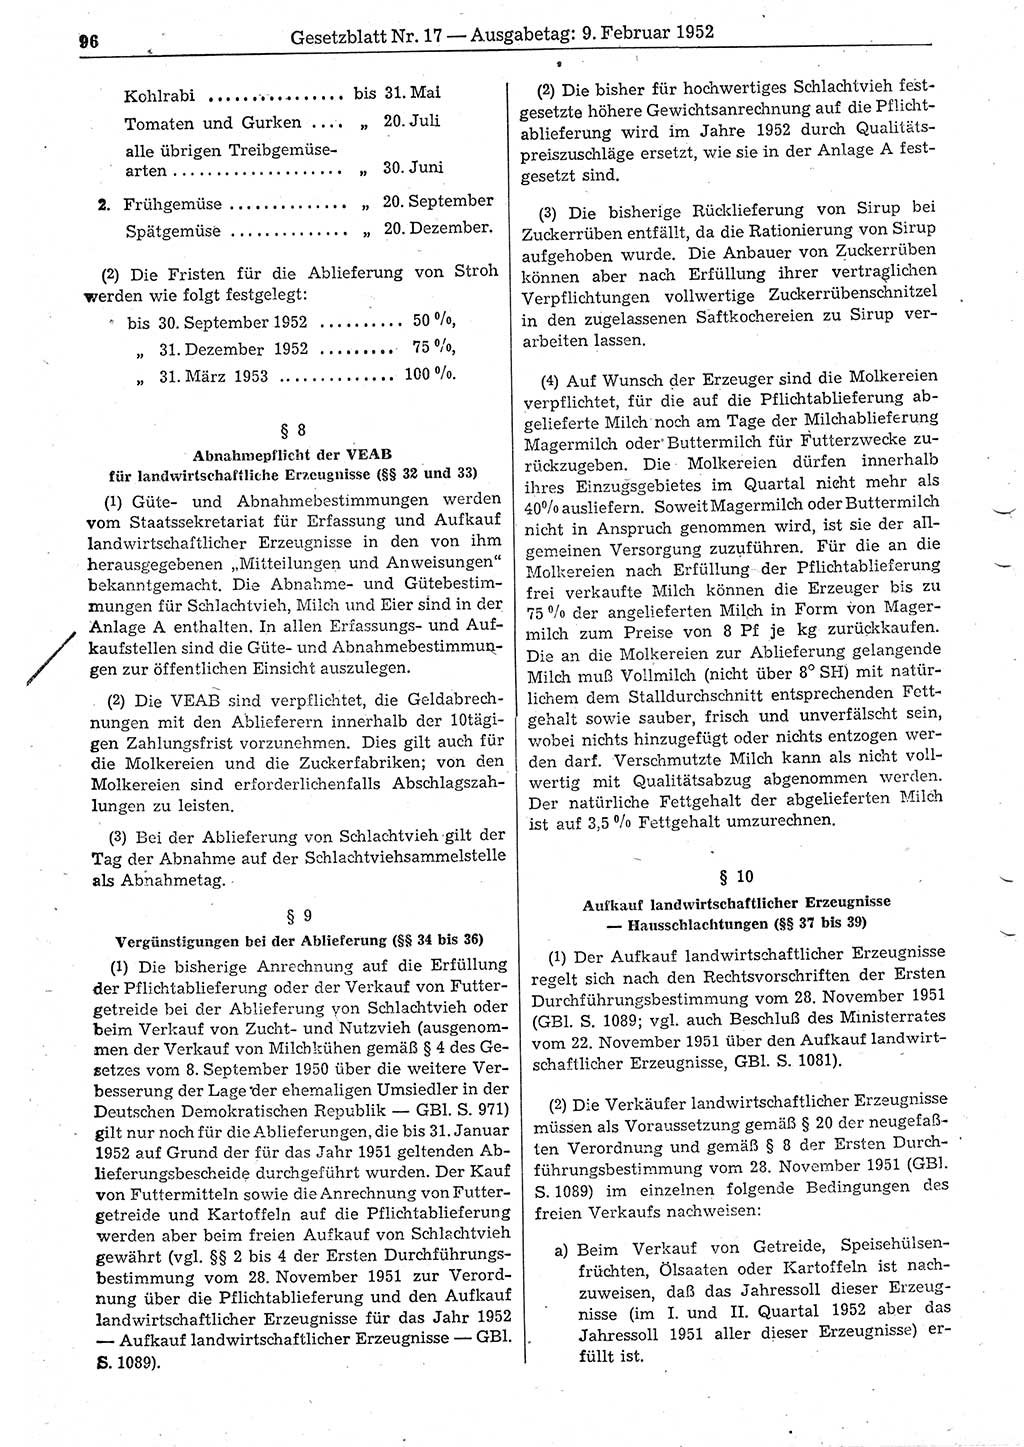 Gesetzblatt (GBl.) der Deutschen Demokratischen Republik (DDR) 1952, Seite 96 (GBl. DDR 1952, S. 96)